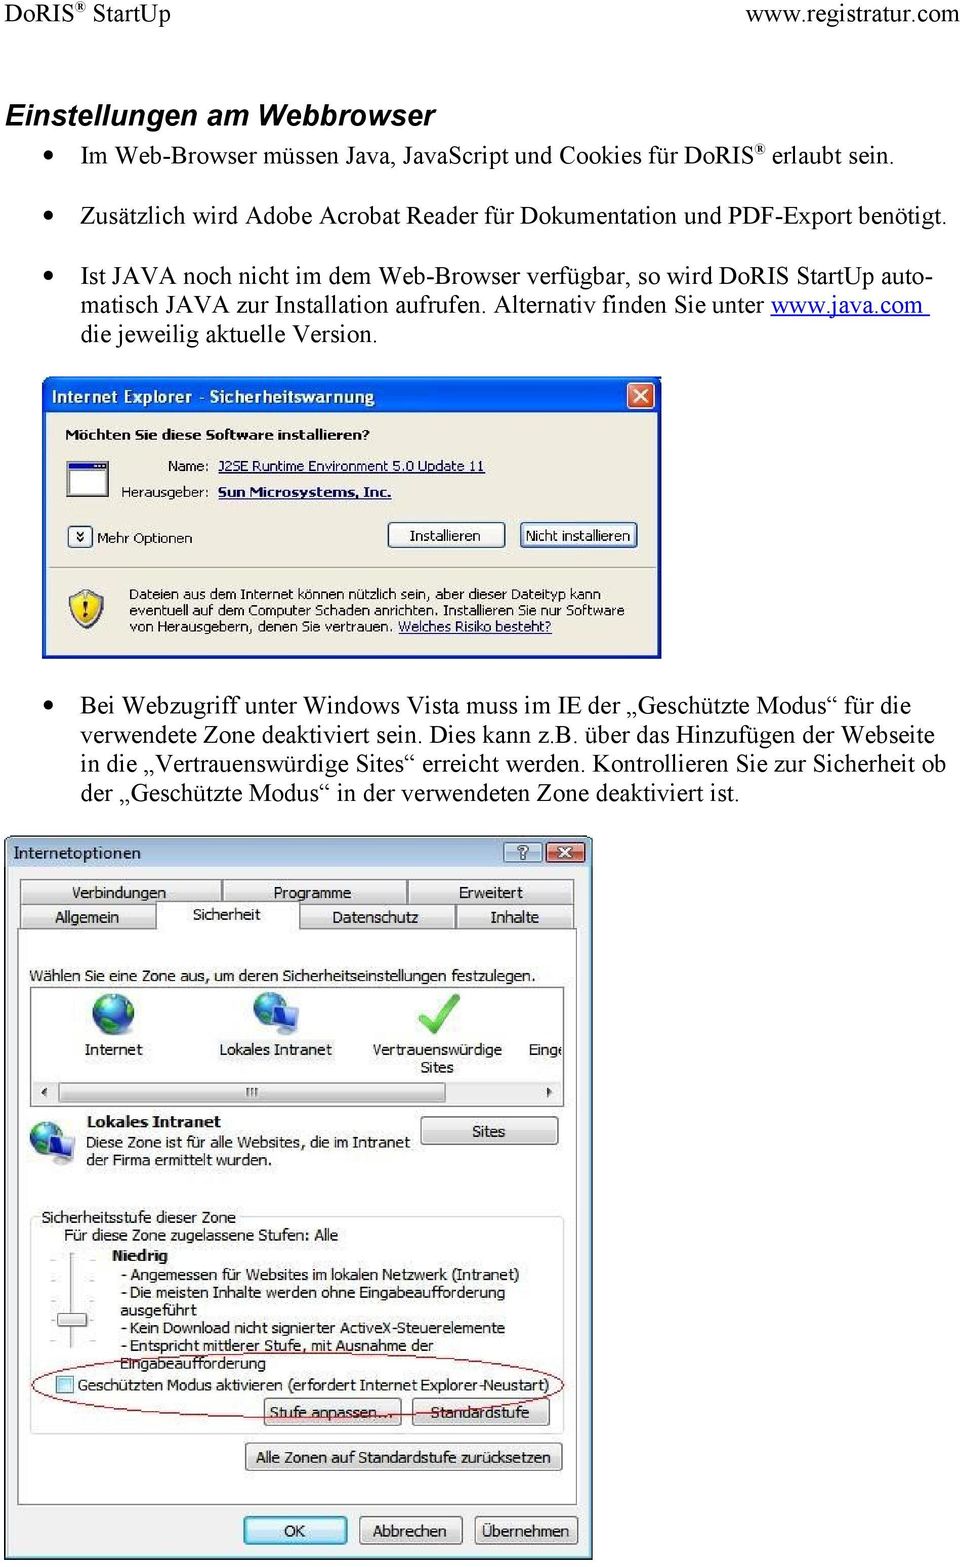 Ist JAVA noch nicht im dem Web-Browser verfügbar, so wird DoRIS StartUp automatisch JAVA zur Installation aufrufen. Alternativ finden Sie unter www.java.